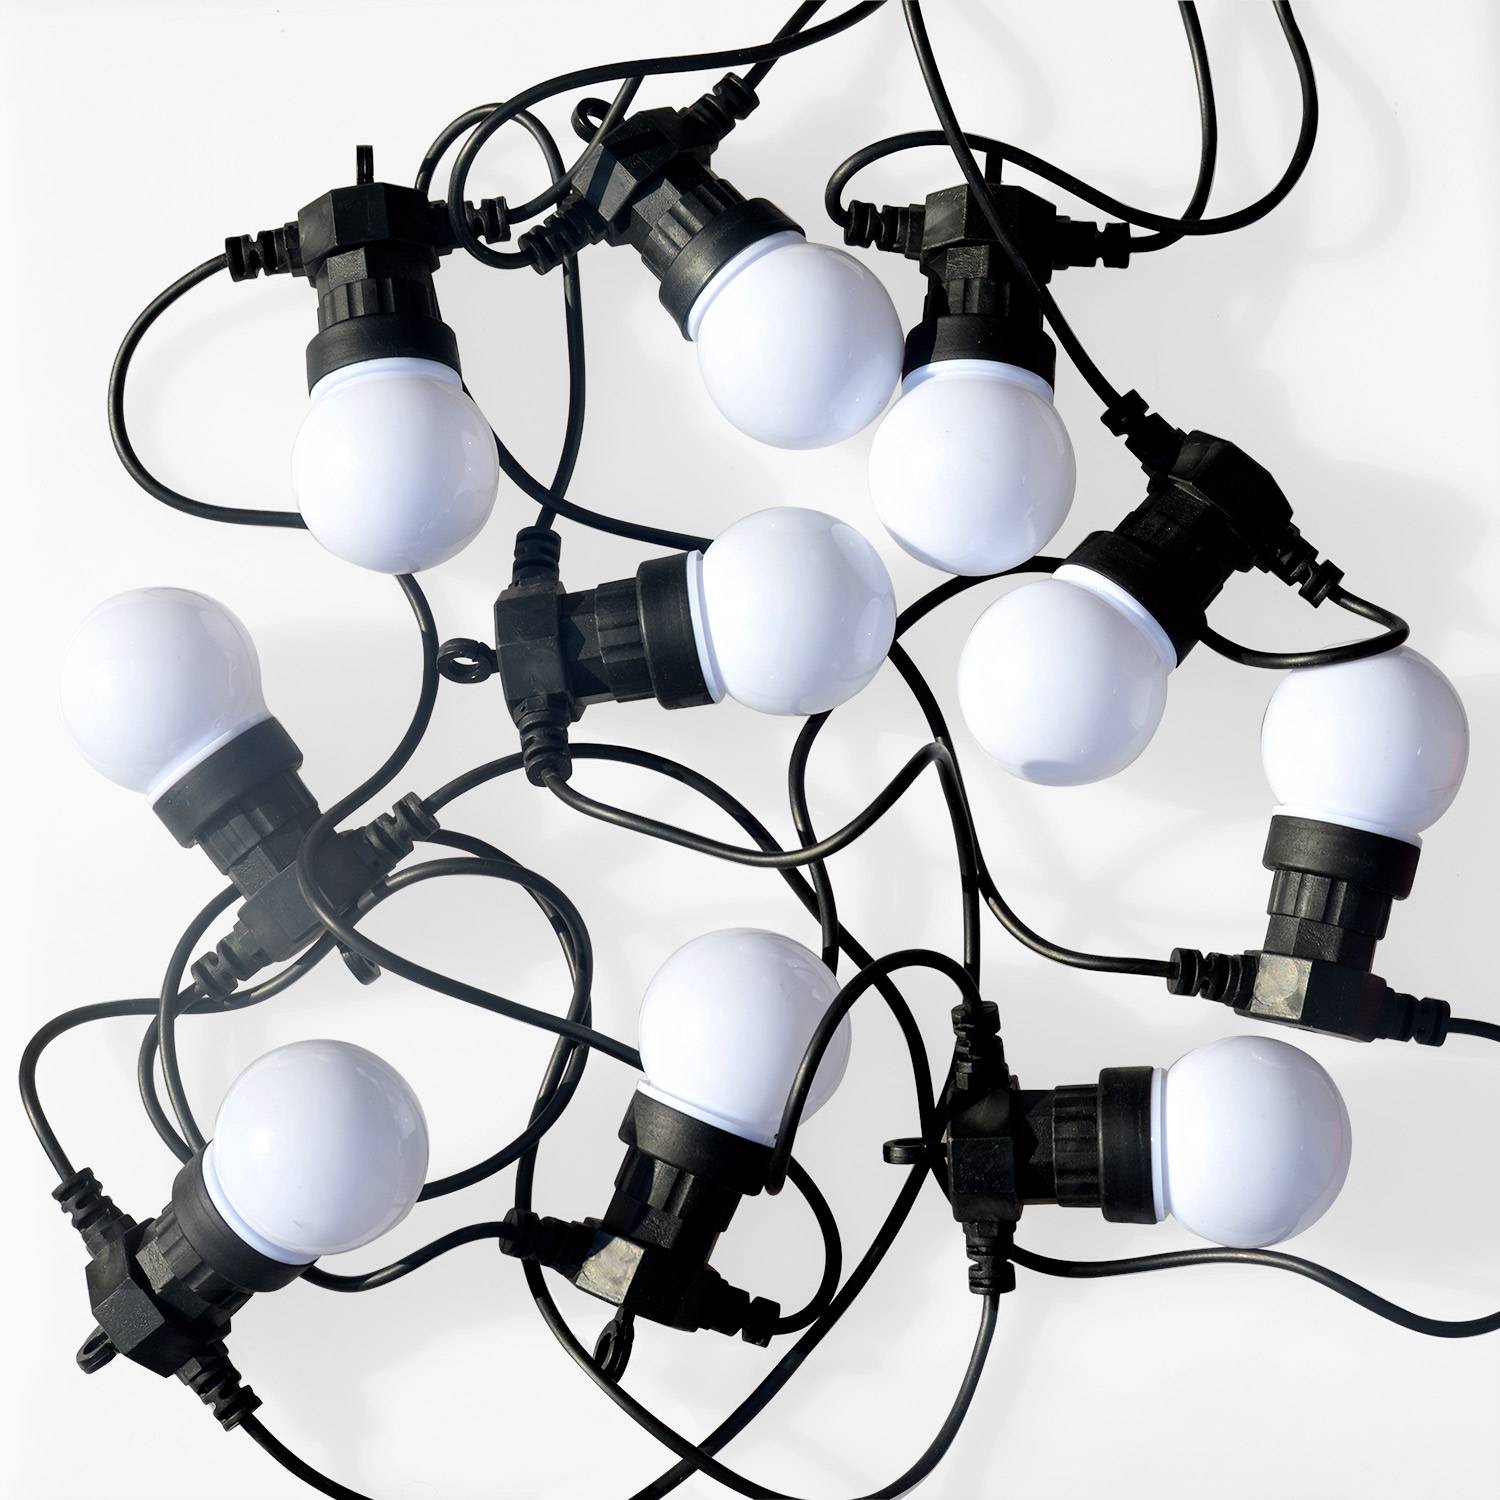 HERACLES - Ghirlanda da esterno con 10 lampadine, 50 LED multicolori, funzionamento a batterie (non incluse), funzione timer, 8 modalità, lunghezza 4,5 m Photo2